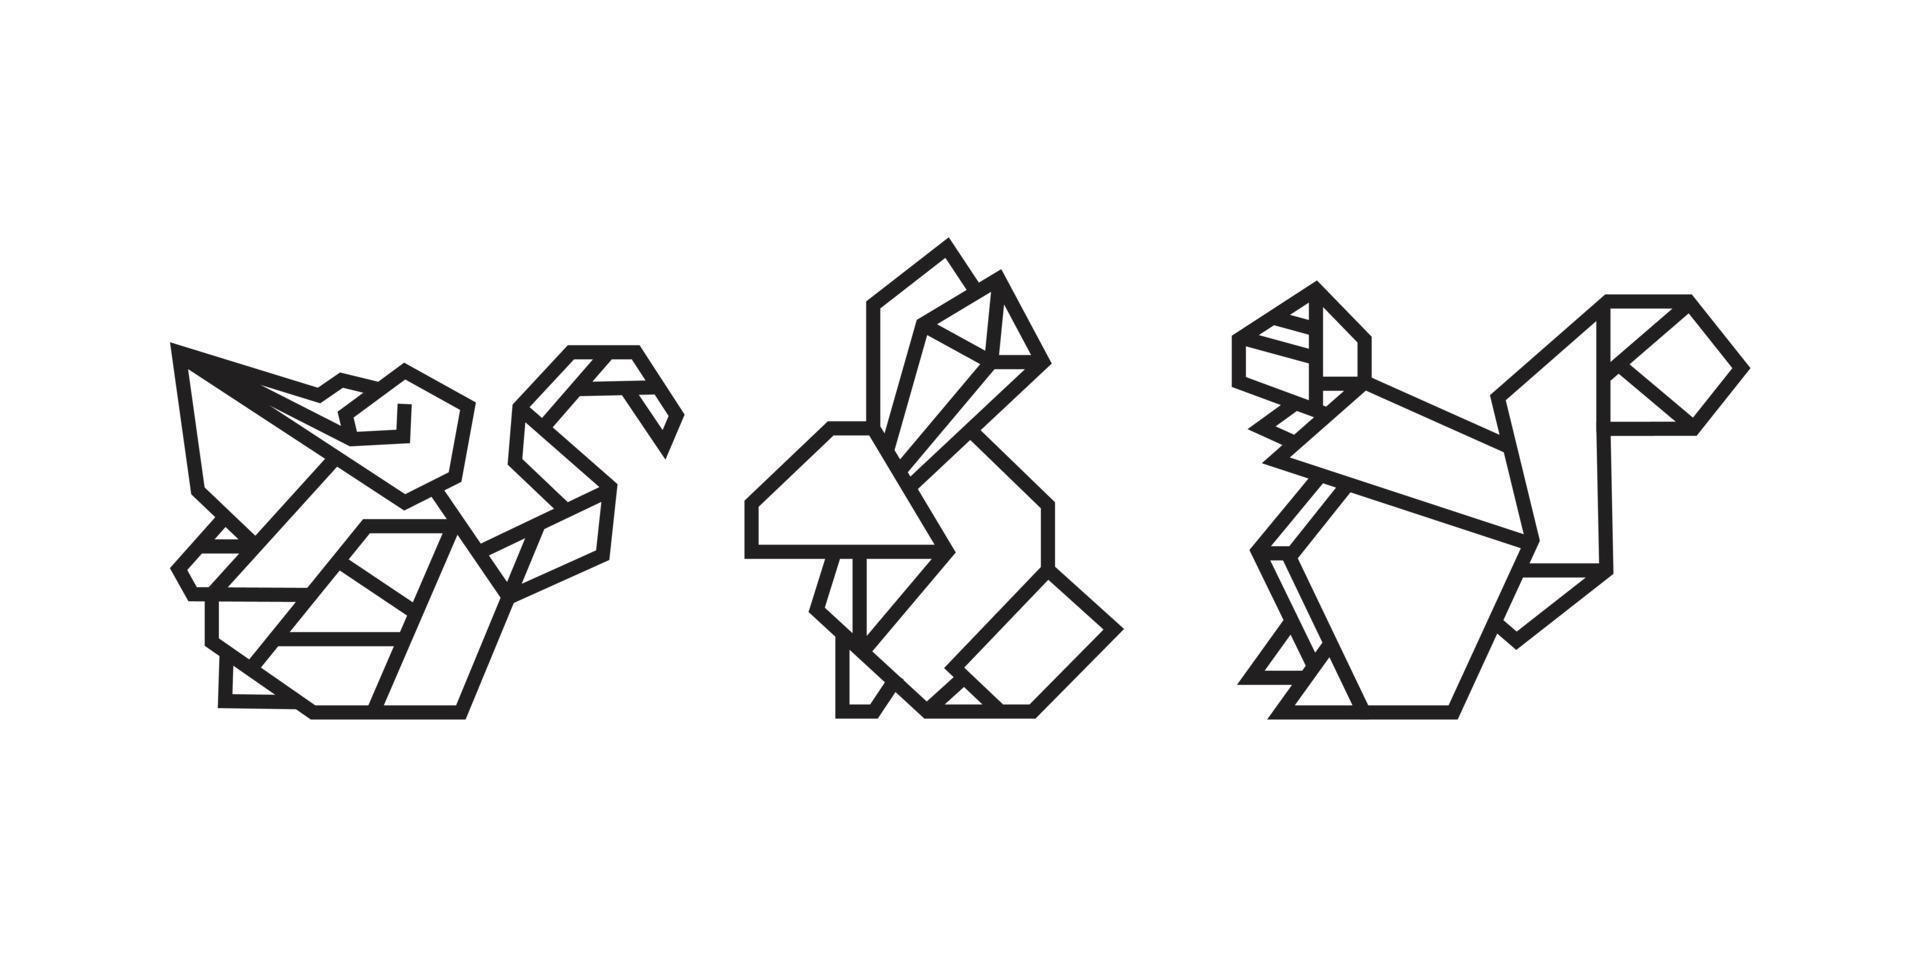 Maus-, Hasen- und Eichhörnchen-Illustrationen im Origami-Stil vektor